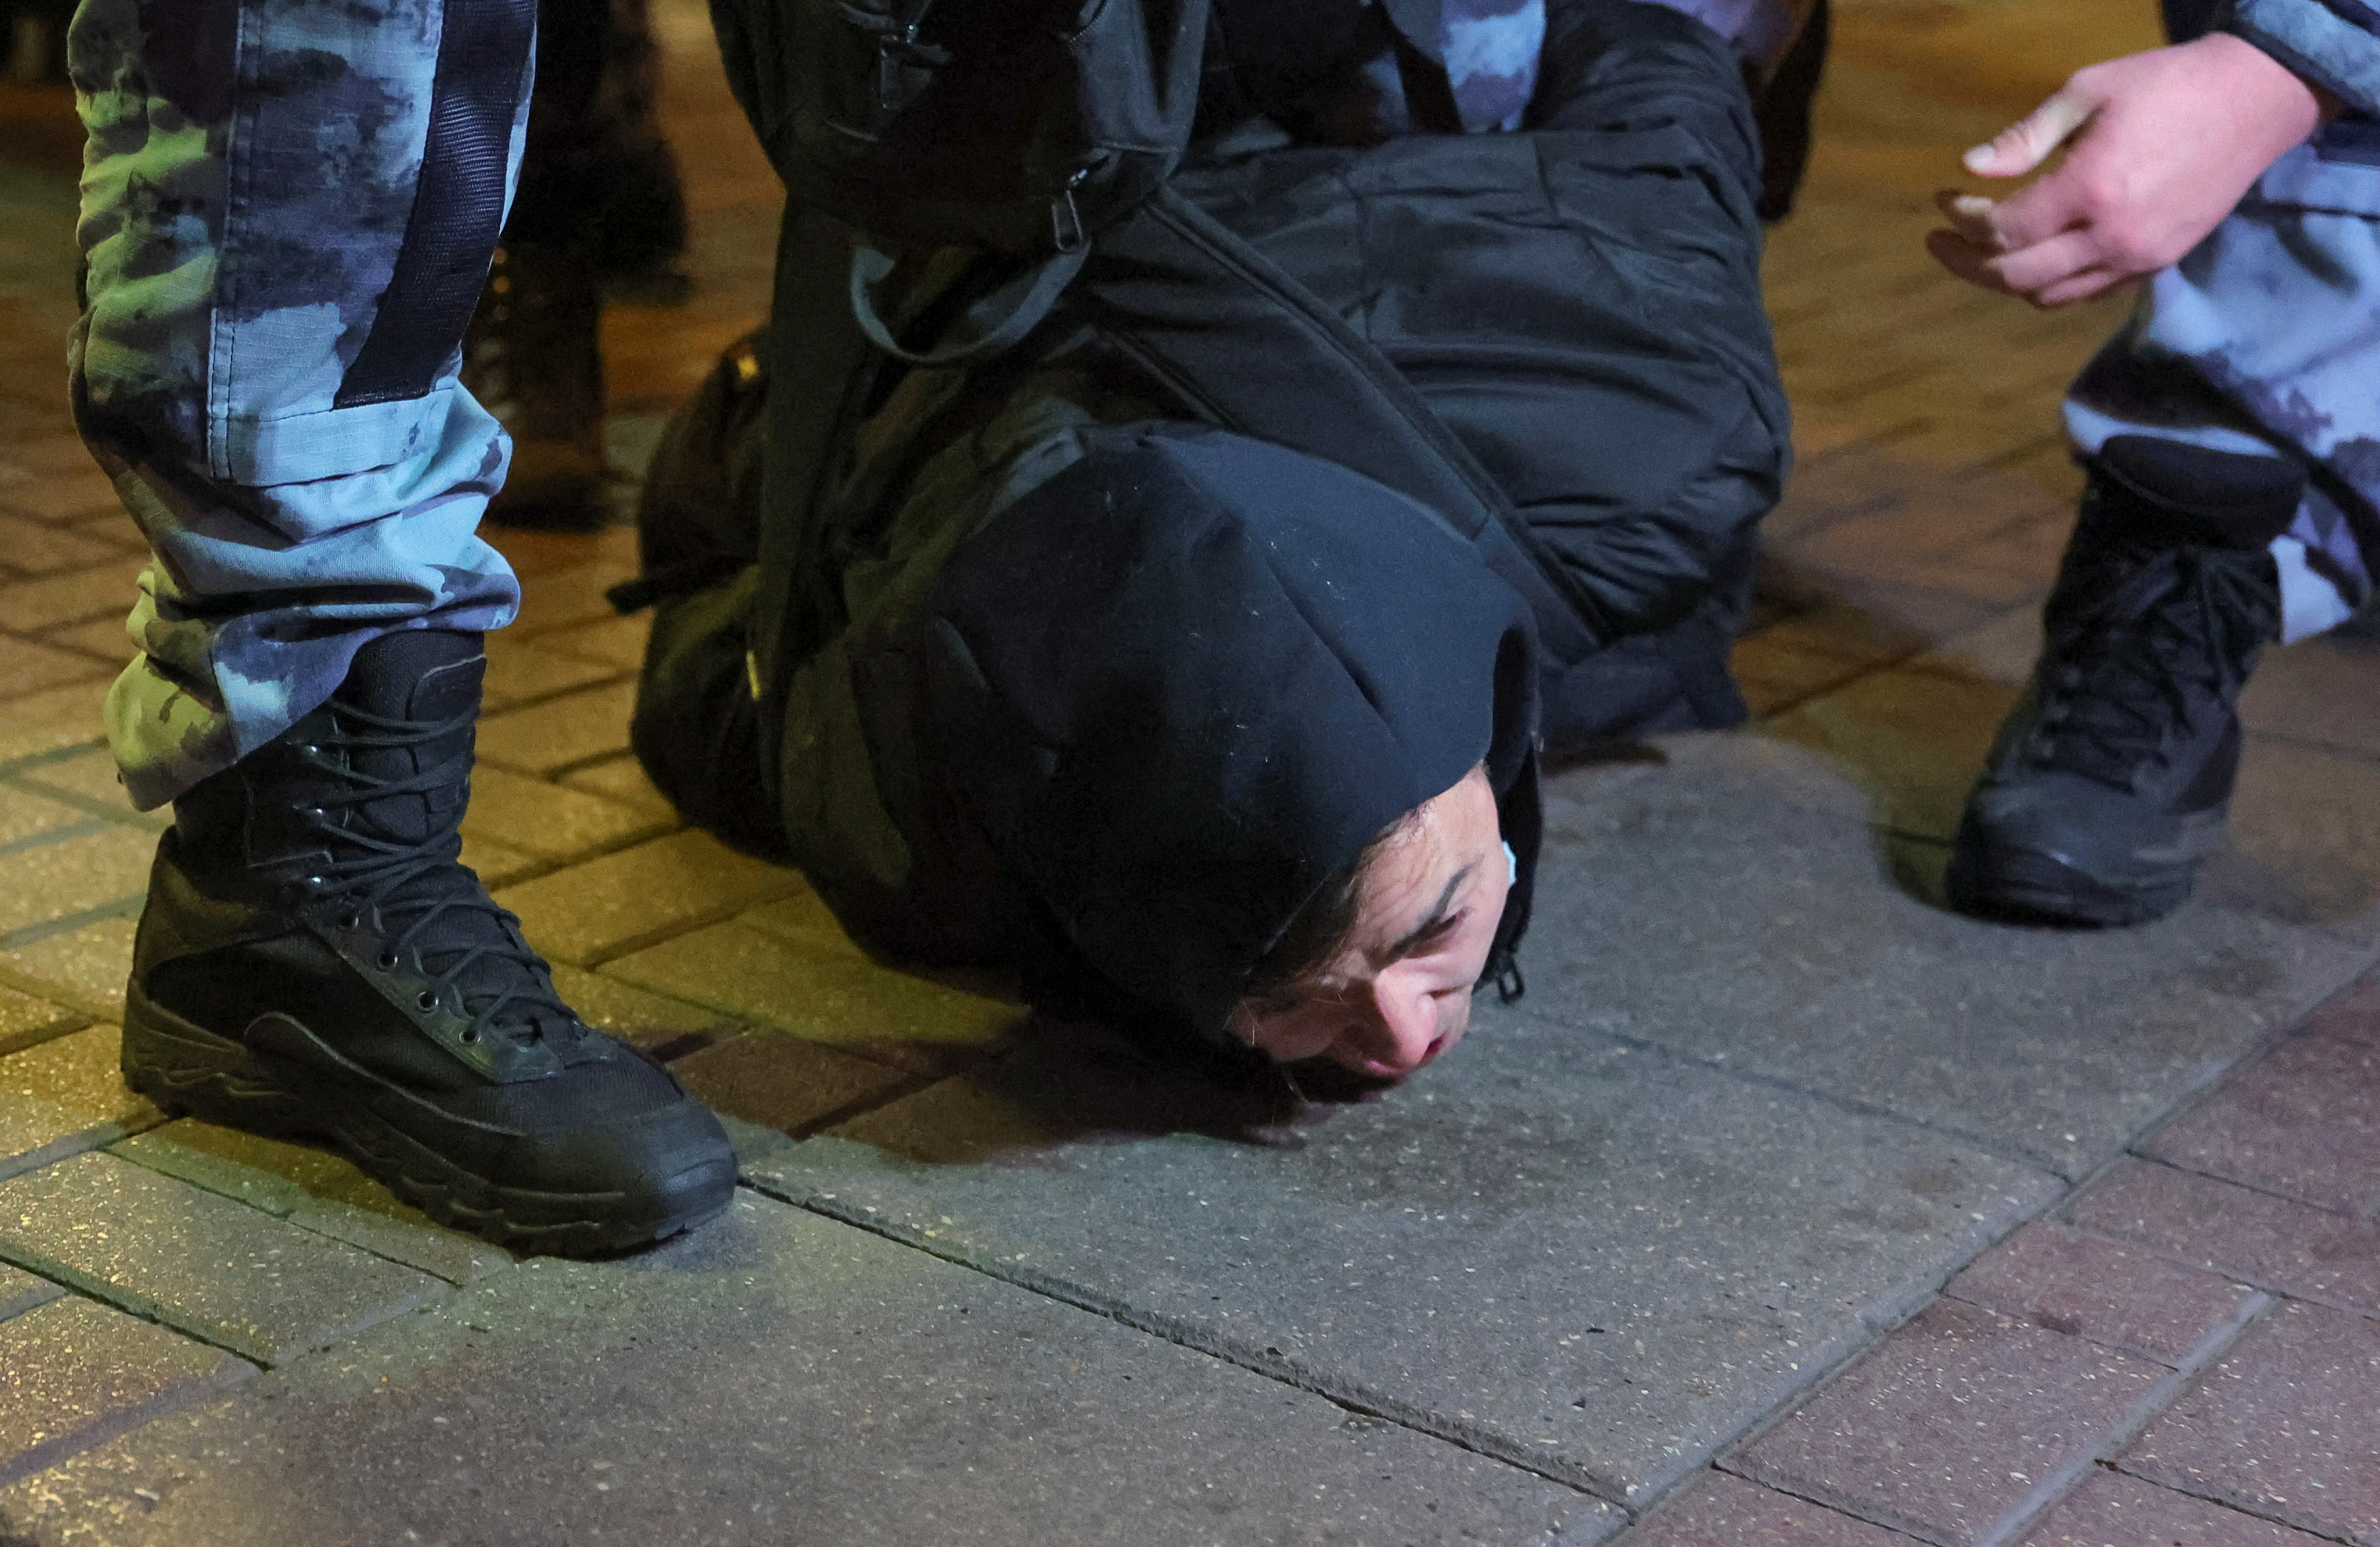 La policía reprimió las protestas y realizó arrestos masivos (REUTERS/REUTERS PHOTOGRAPHER)